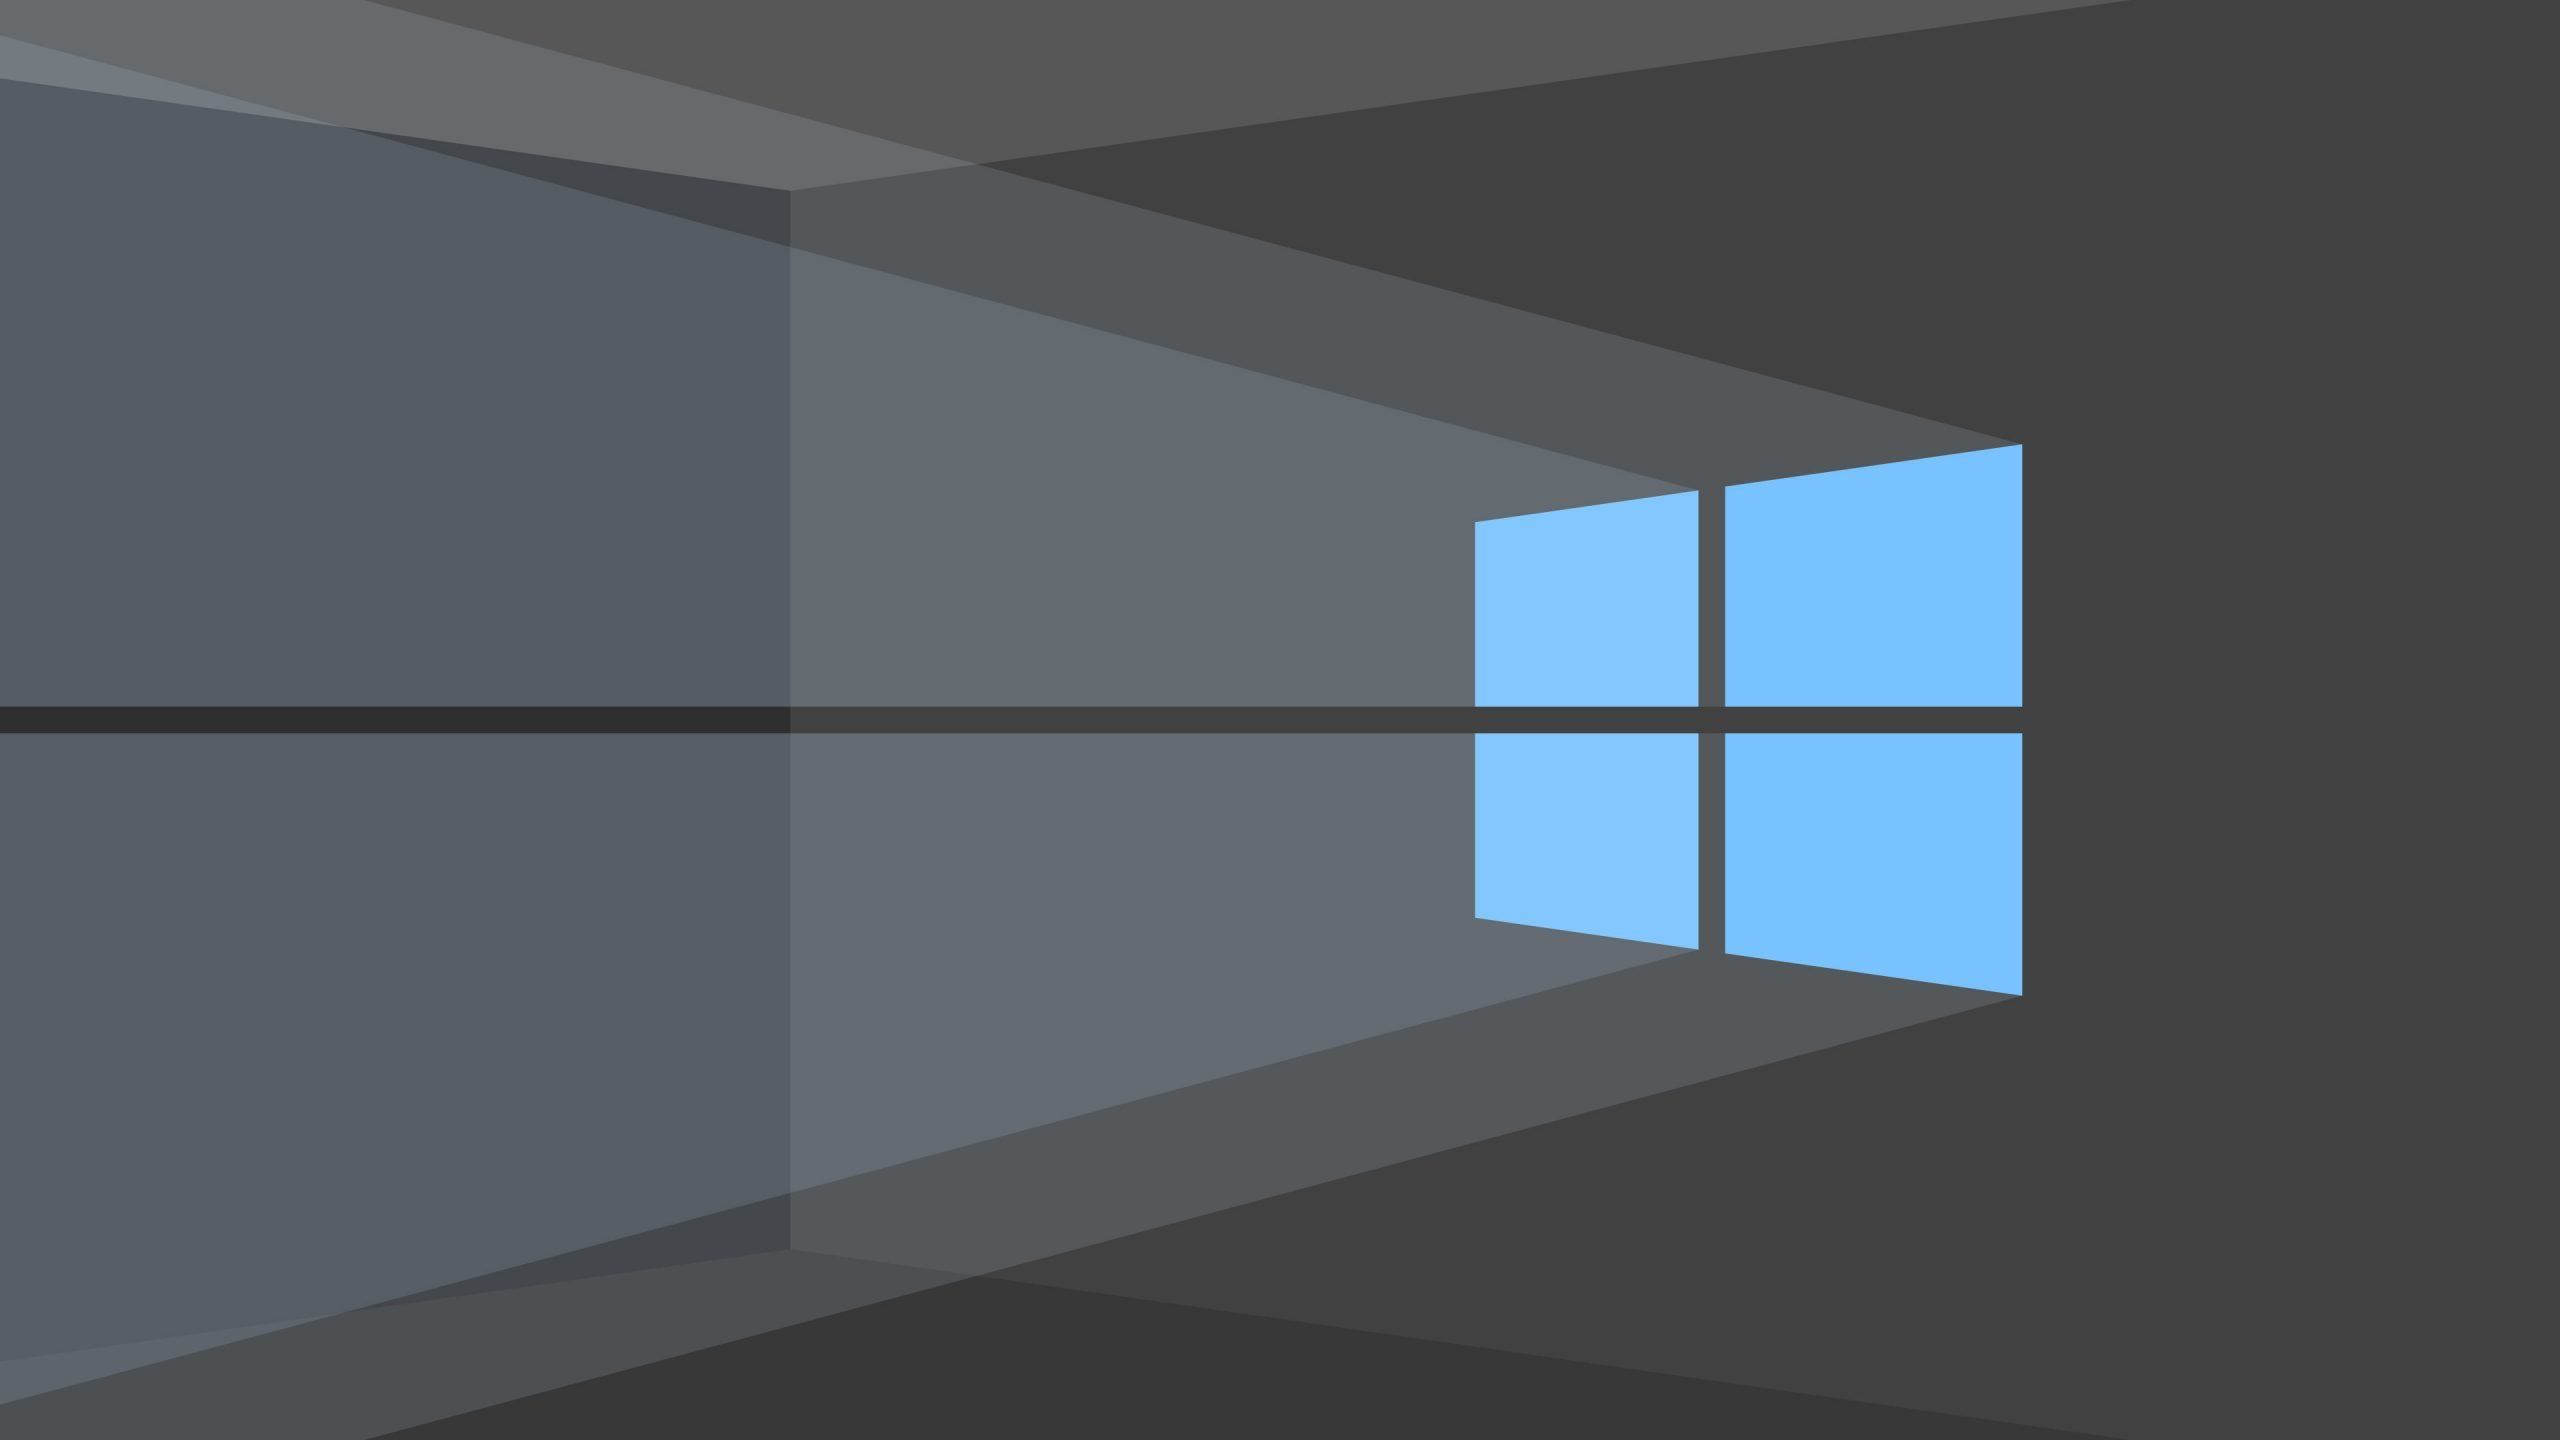 Windows 10 Wallpaper, Minimalism, Minimalist, Hd, 4k, Computer